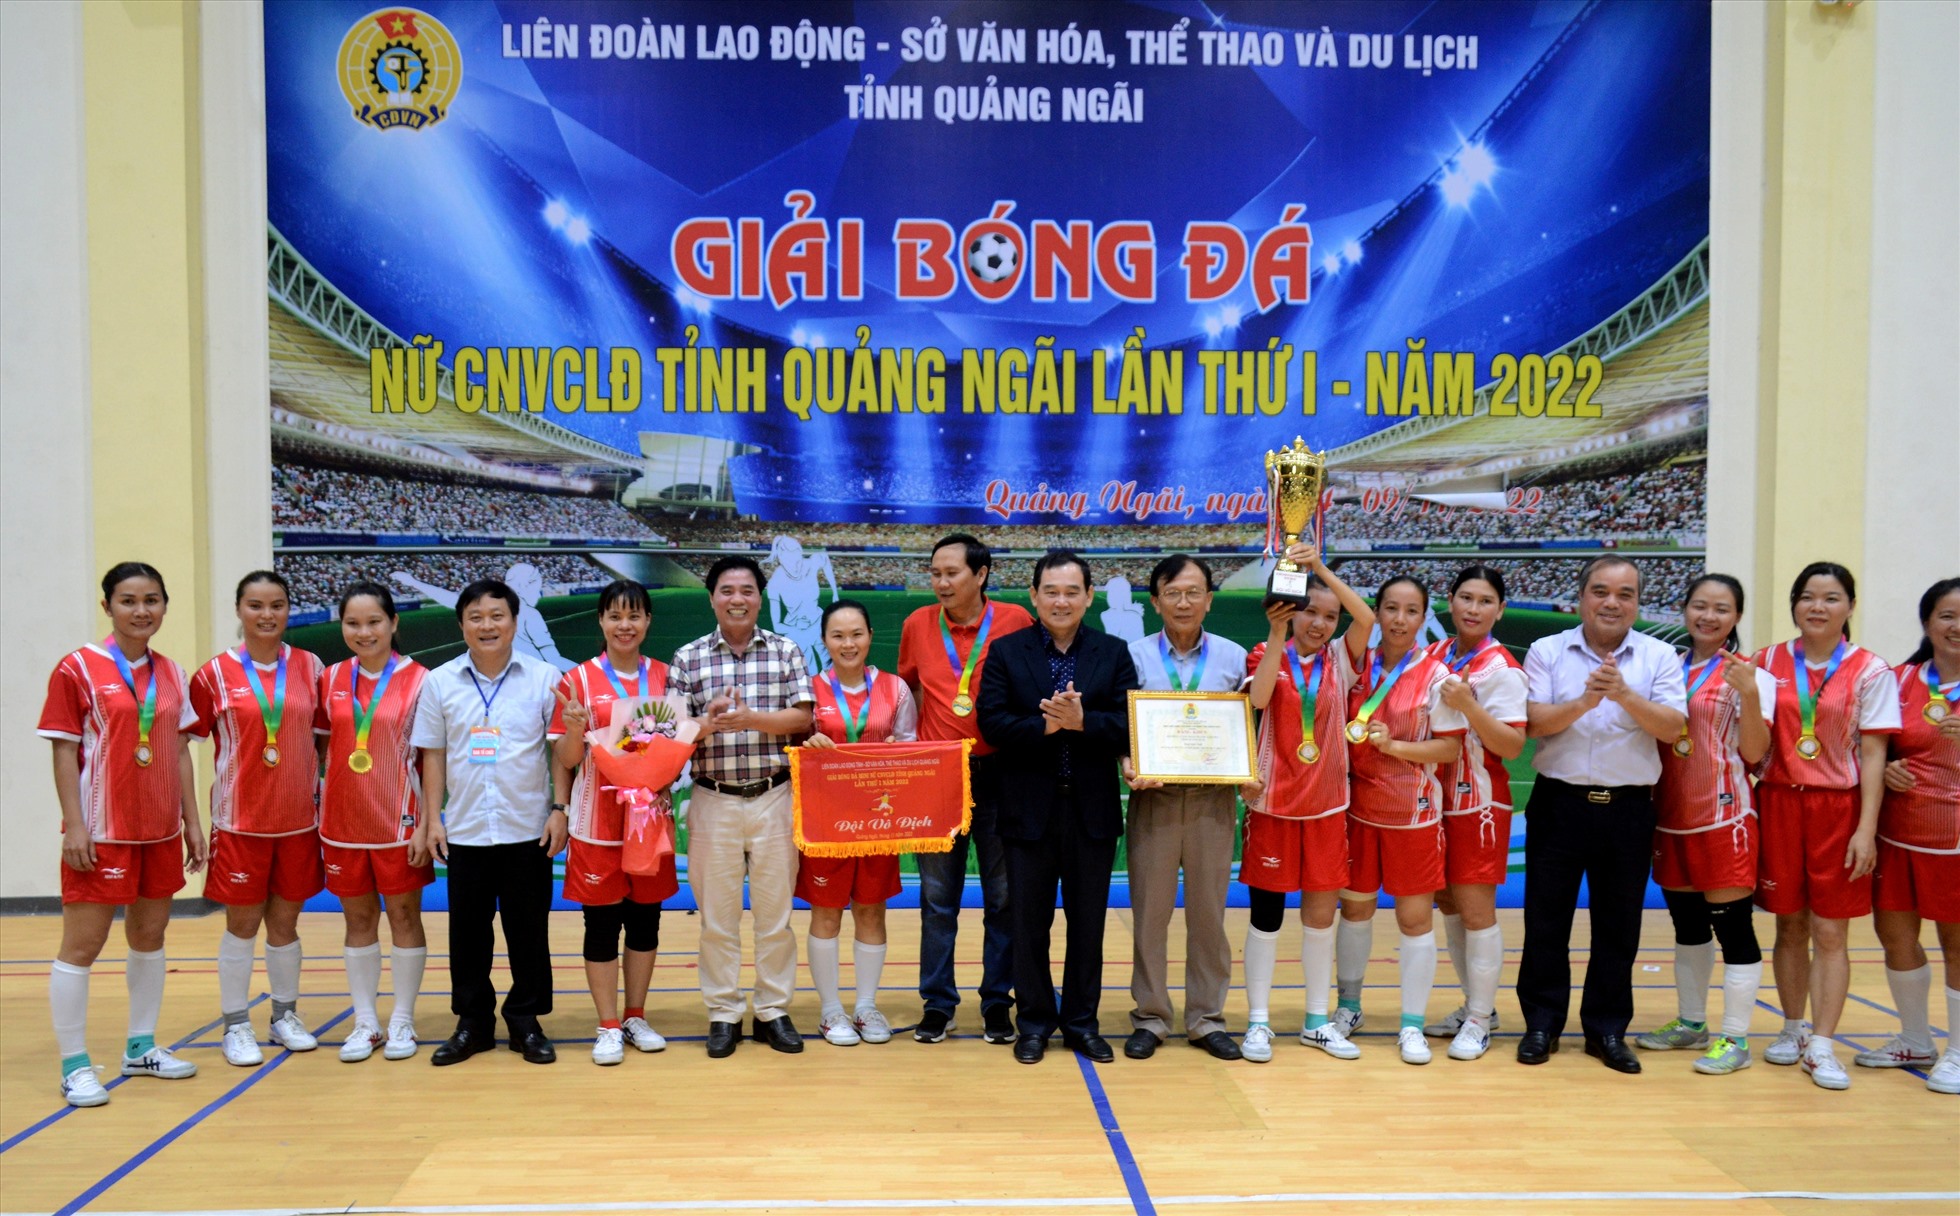 Công đoàn ngành giáo dục vô địch Giải bóng nữ CNVCLĐ tỉnh Quảng Ngãi lần thứ I – năm 2022.